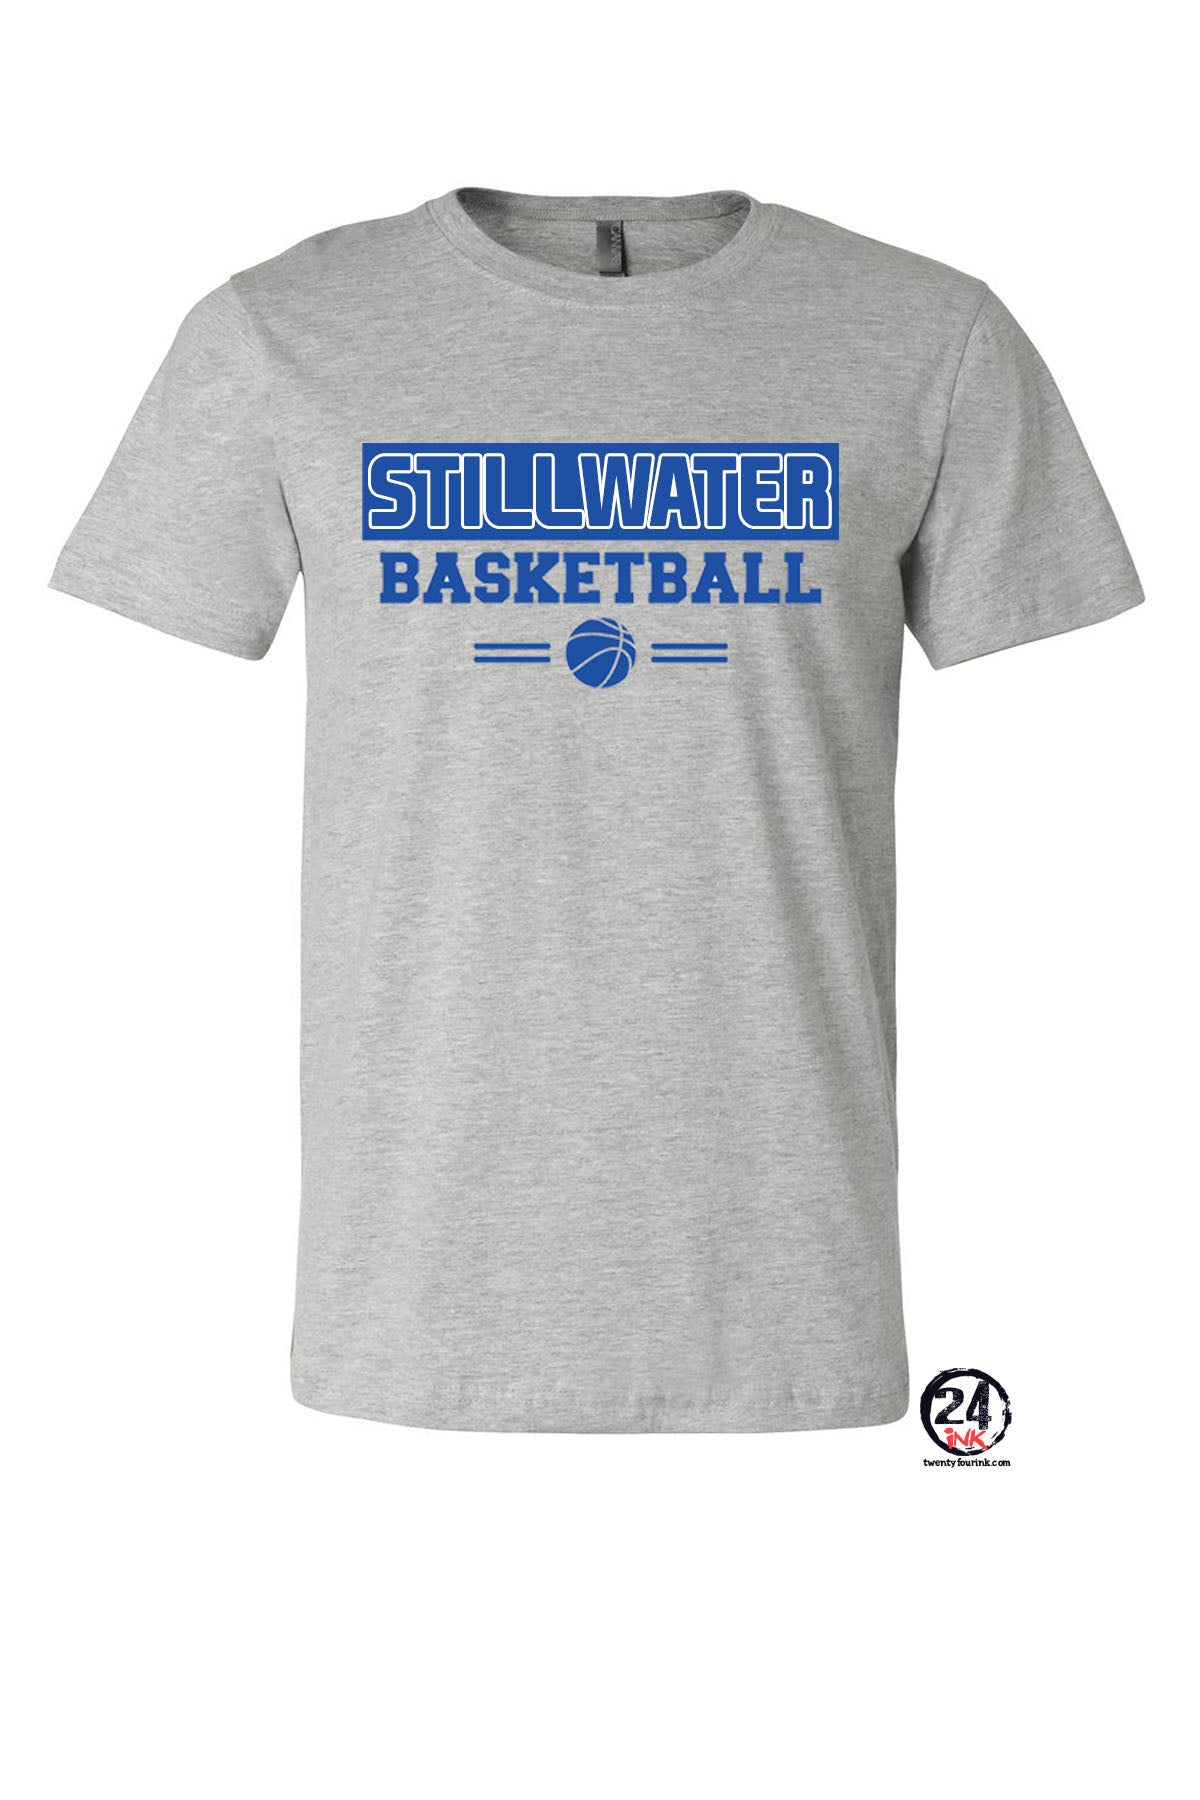 Stillwater Basketball Box T-Shirt